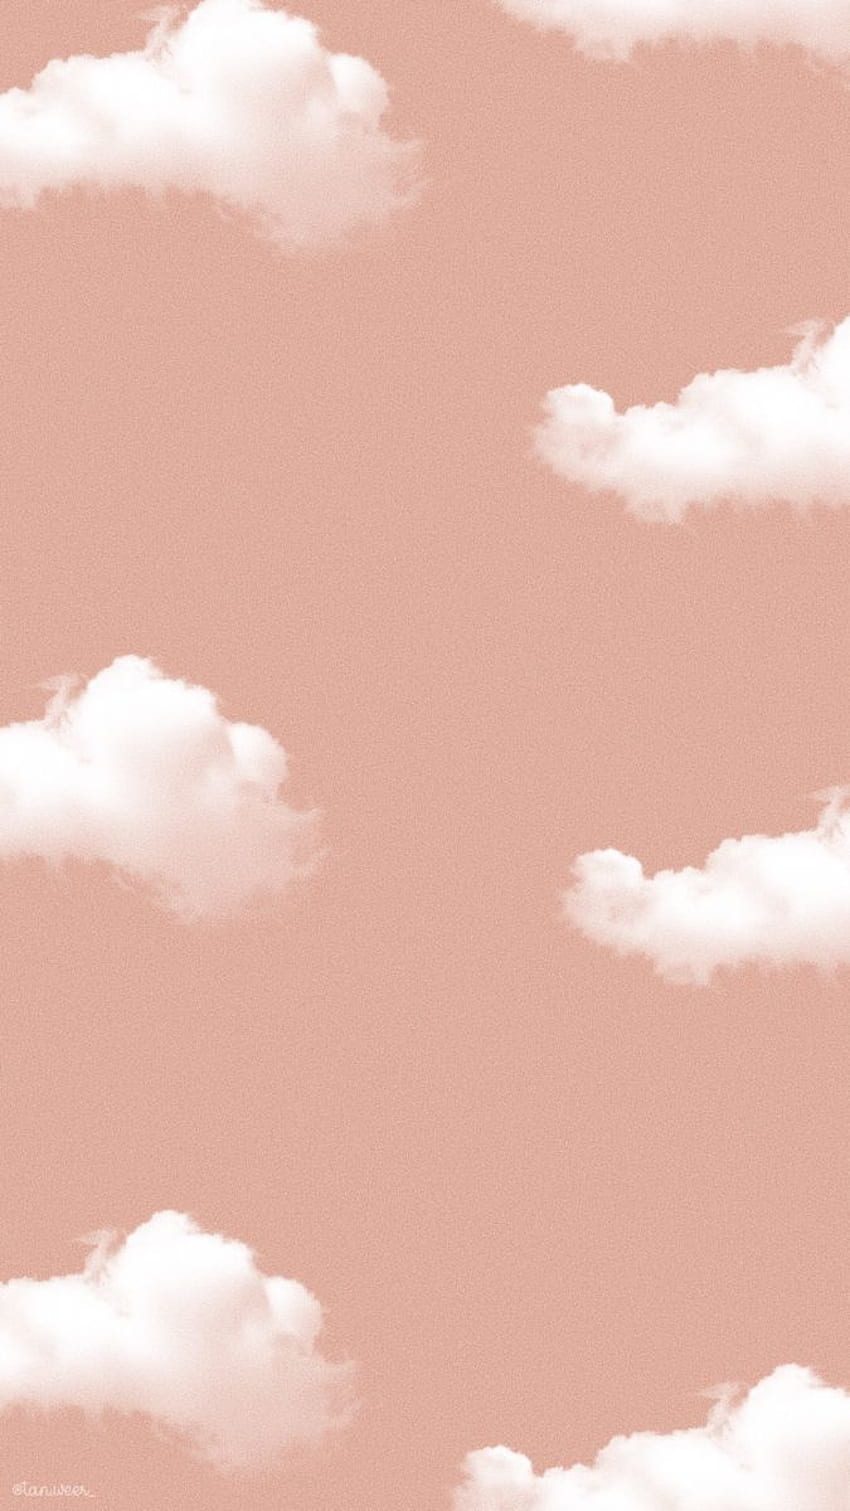 Với mỗi ngày đêm thay đổi, những đám mây trôi nhẹ trên bầu trời luôn khiến cho tâm hồn ta vô cùng thư giãn và yên bình. Ảnh liên quan đến đám mây sẽ giúp bạn thấy rõ vẻ đẹp của những hình ảnh sống động này.